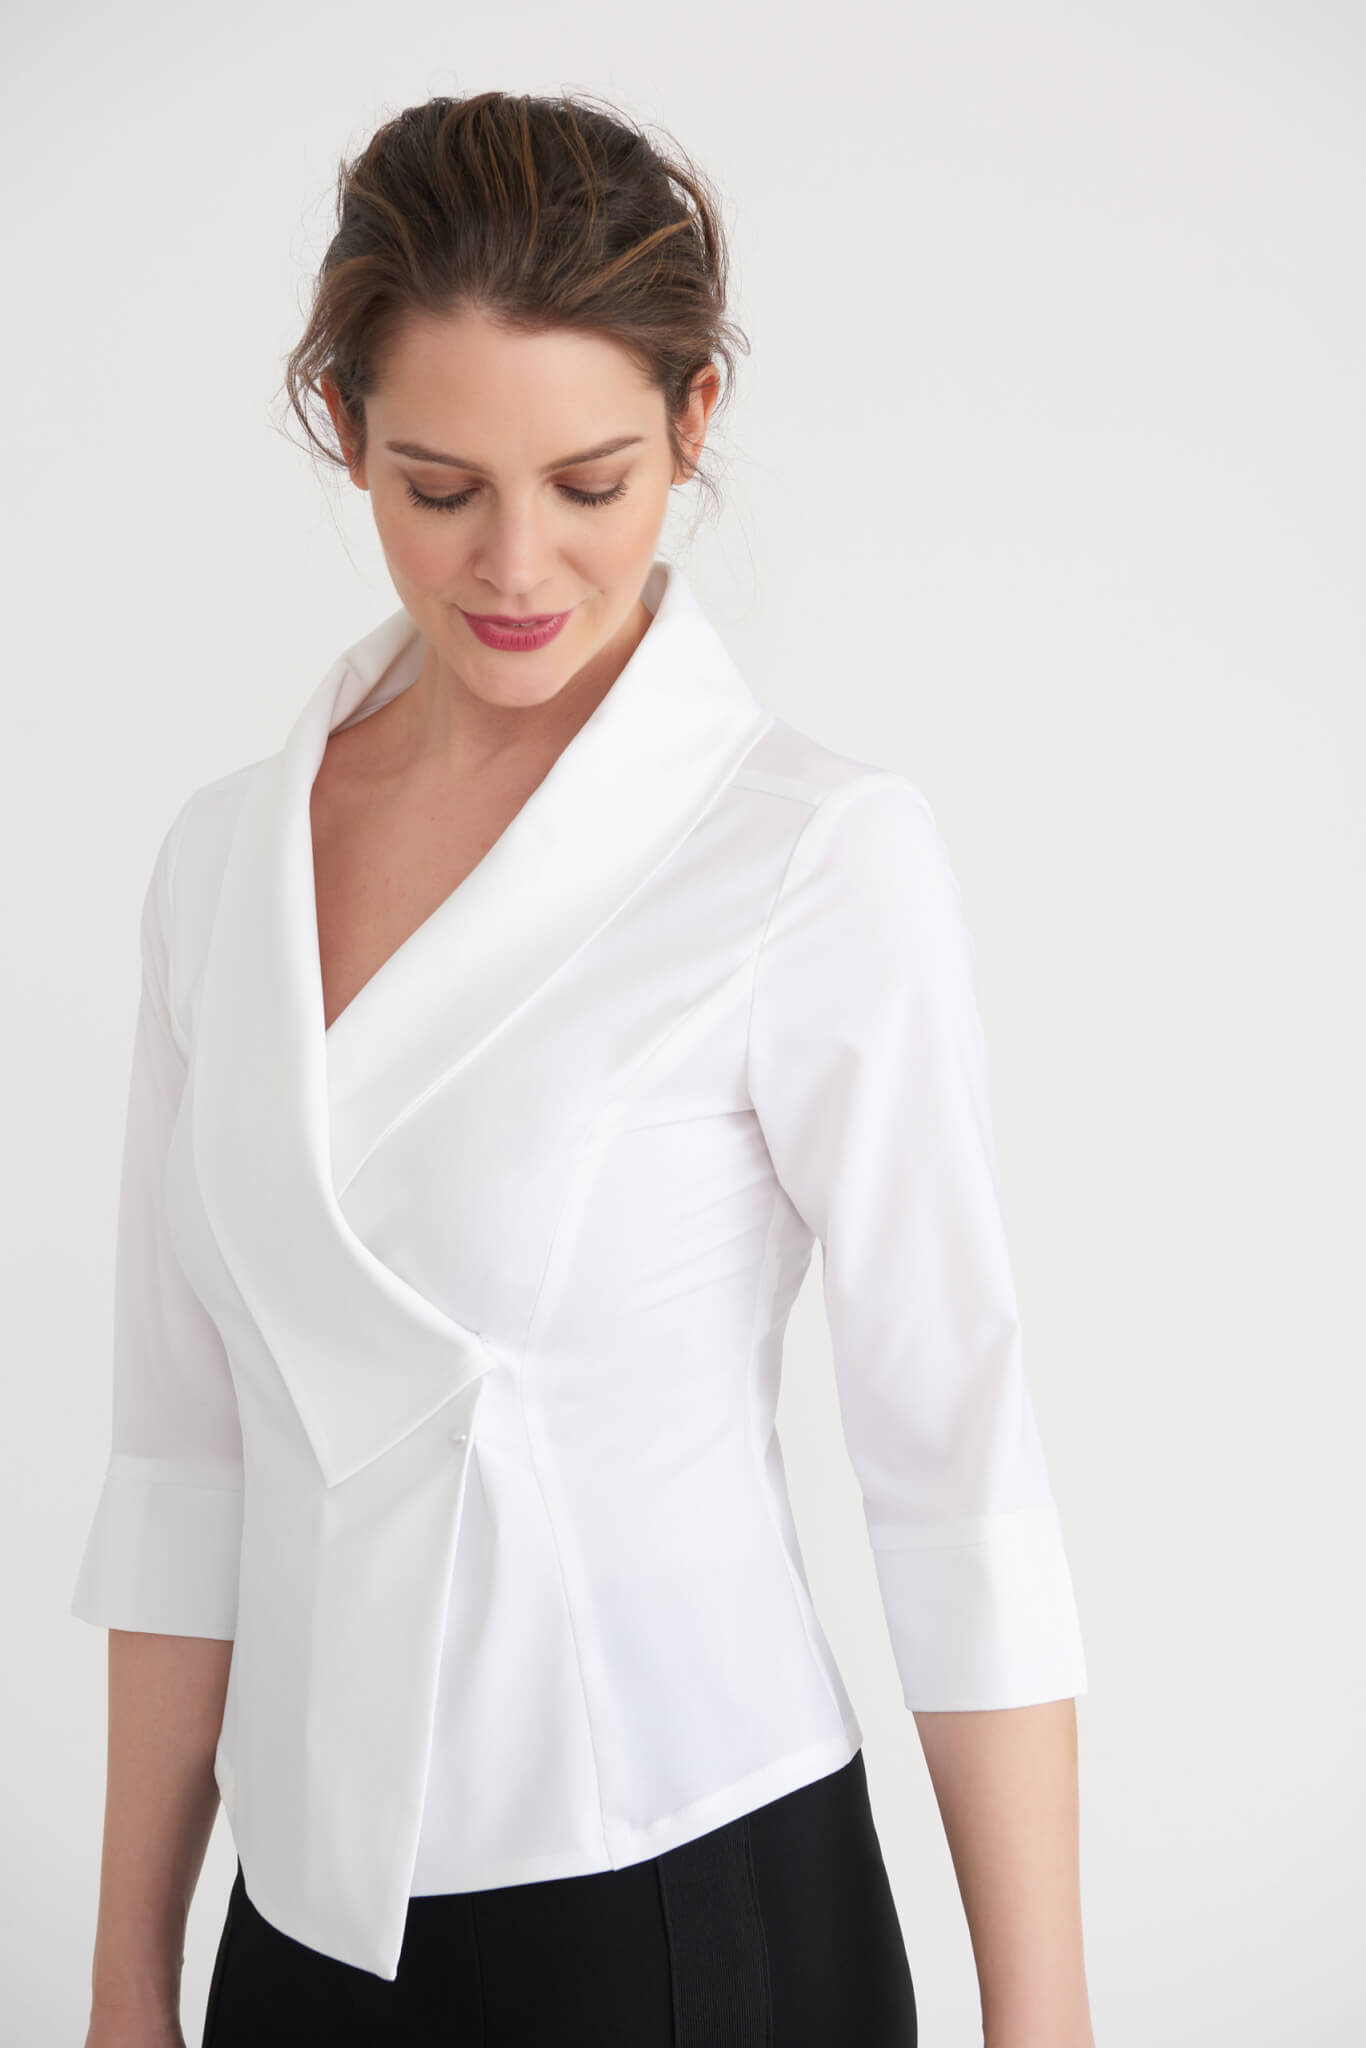 ZSQAW Blouses Femme Long Sleeve White Blouse Women Tops Blouse